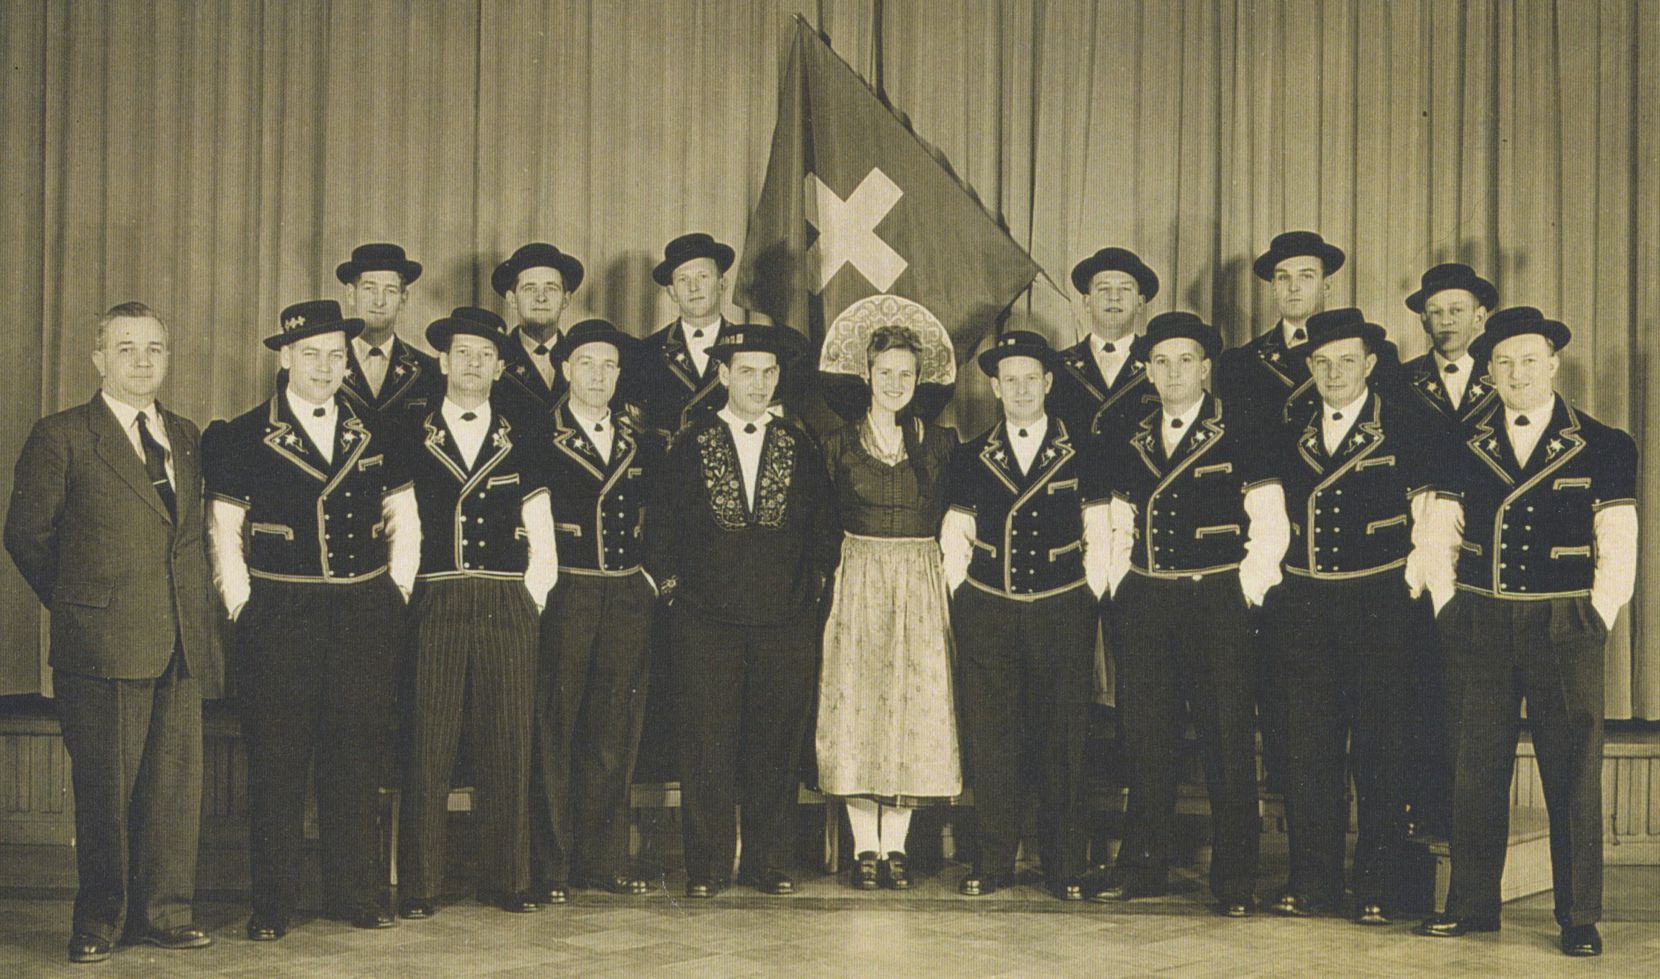 Eine Schwarzweiss-Aufnahme die die Gruppe Alpenrösli, bestehend aus 15 Männern und einer Frau, zeigt.